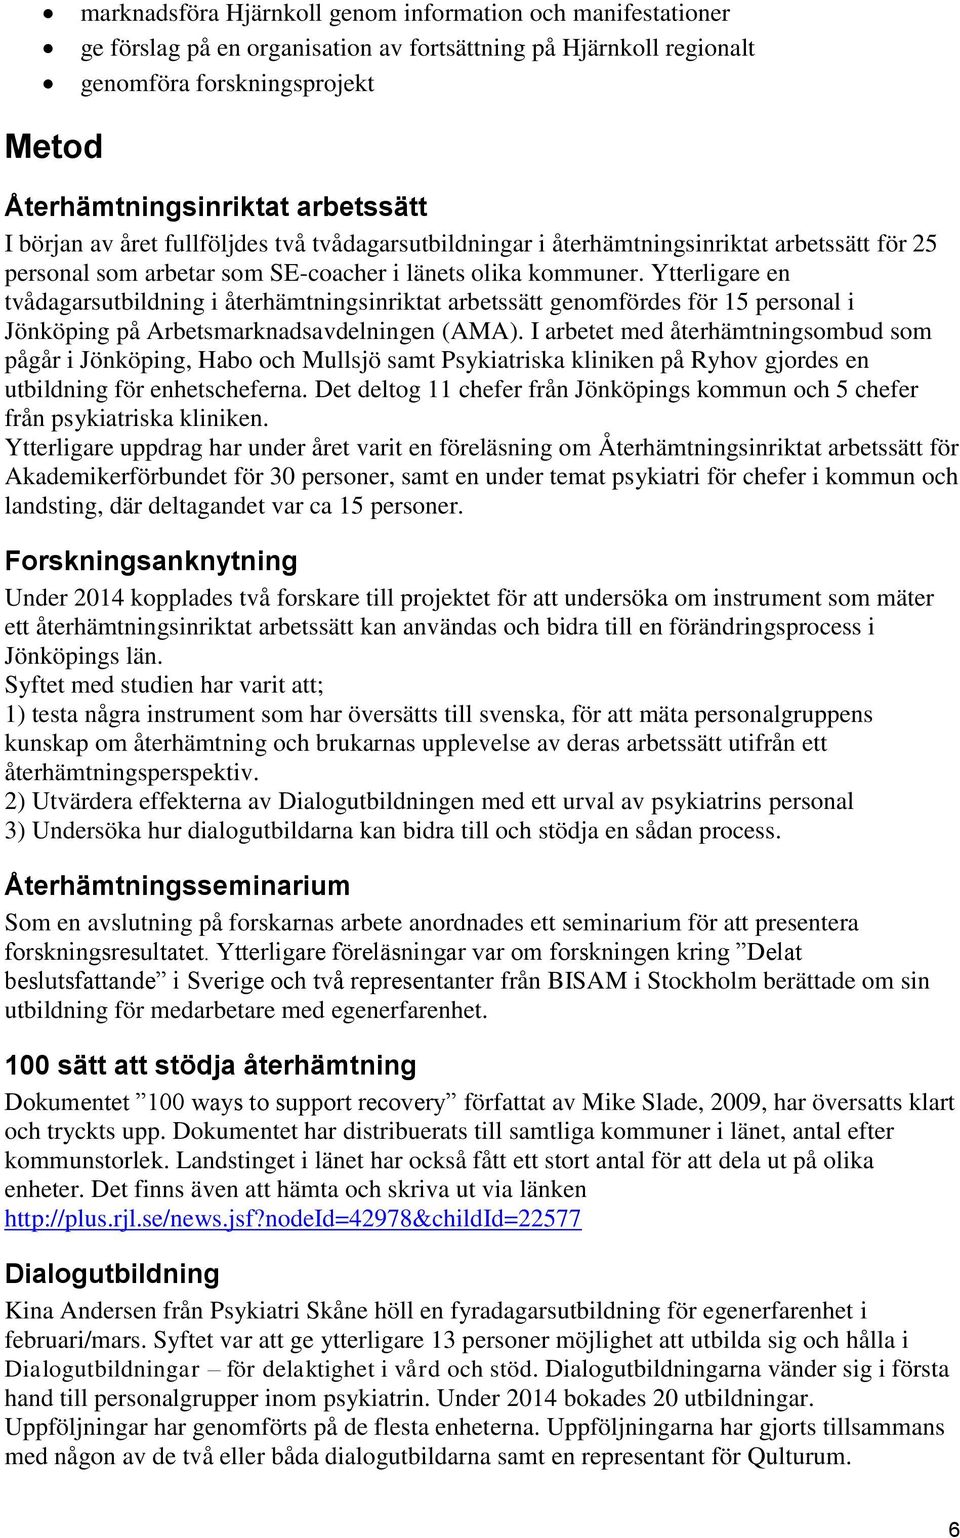 Ytterligare en tvådagarsutbildning i återhämtningsinriktat arbetssätt genomfördes för 15 personal i Jönköping på Arbetsmarknadsavdelningen (AMA).